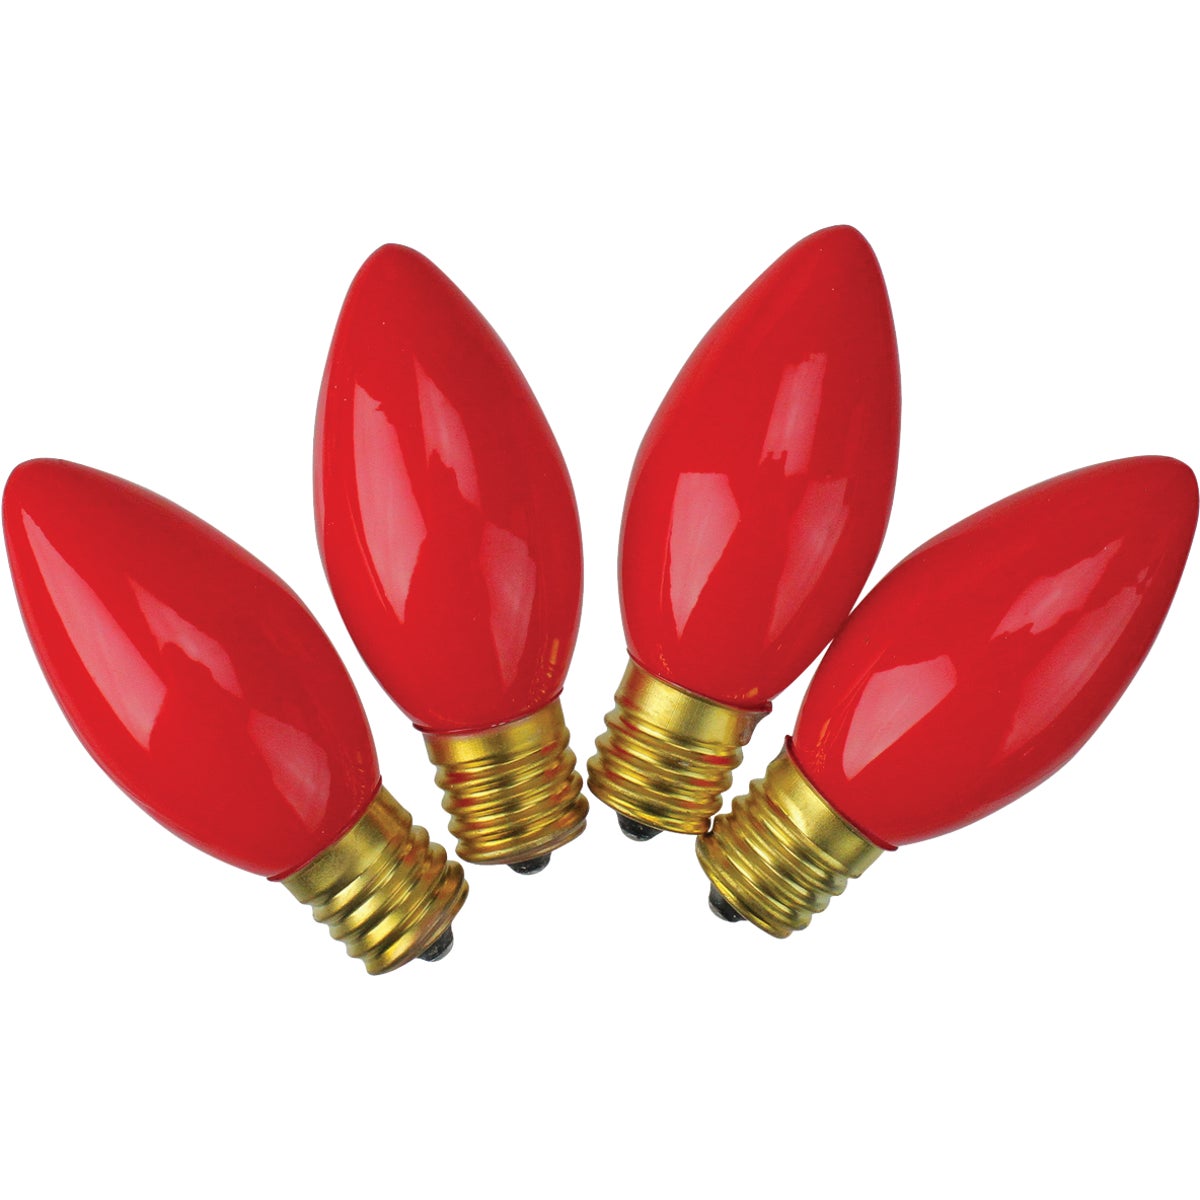 J Hofert C9 Red Ceramic 125V Replacement Light Bulb (4-Pack)